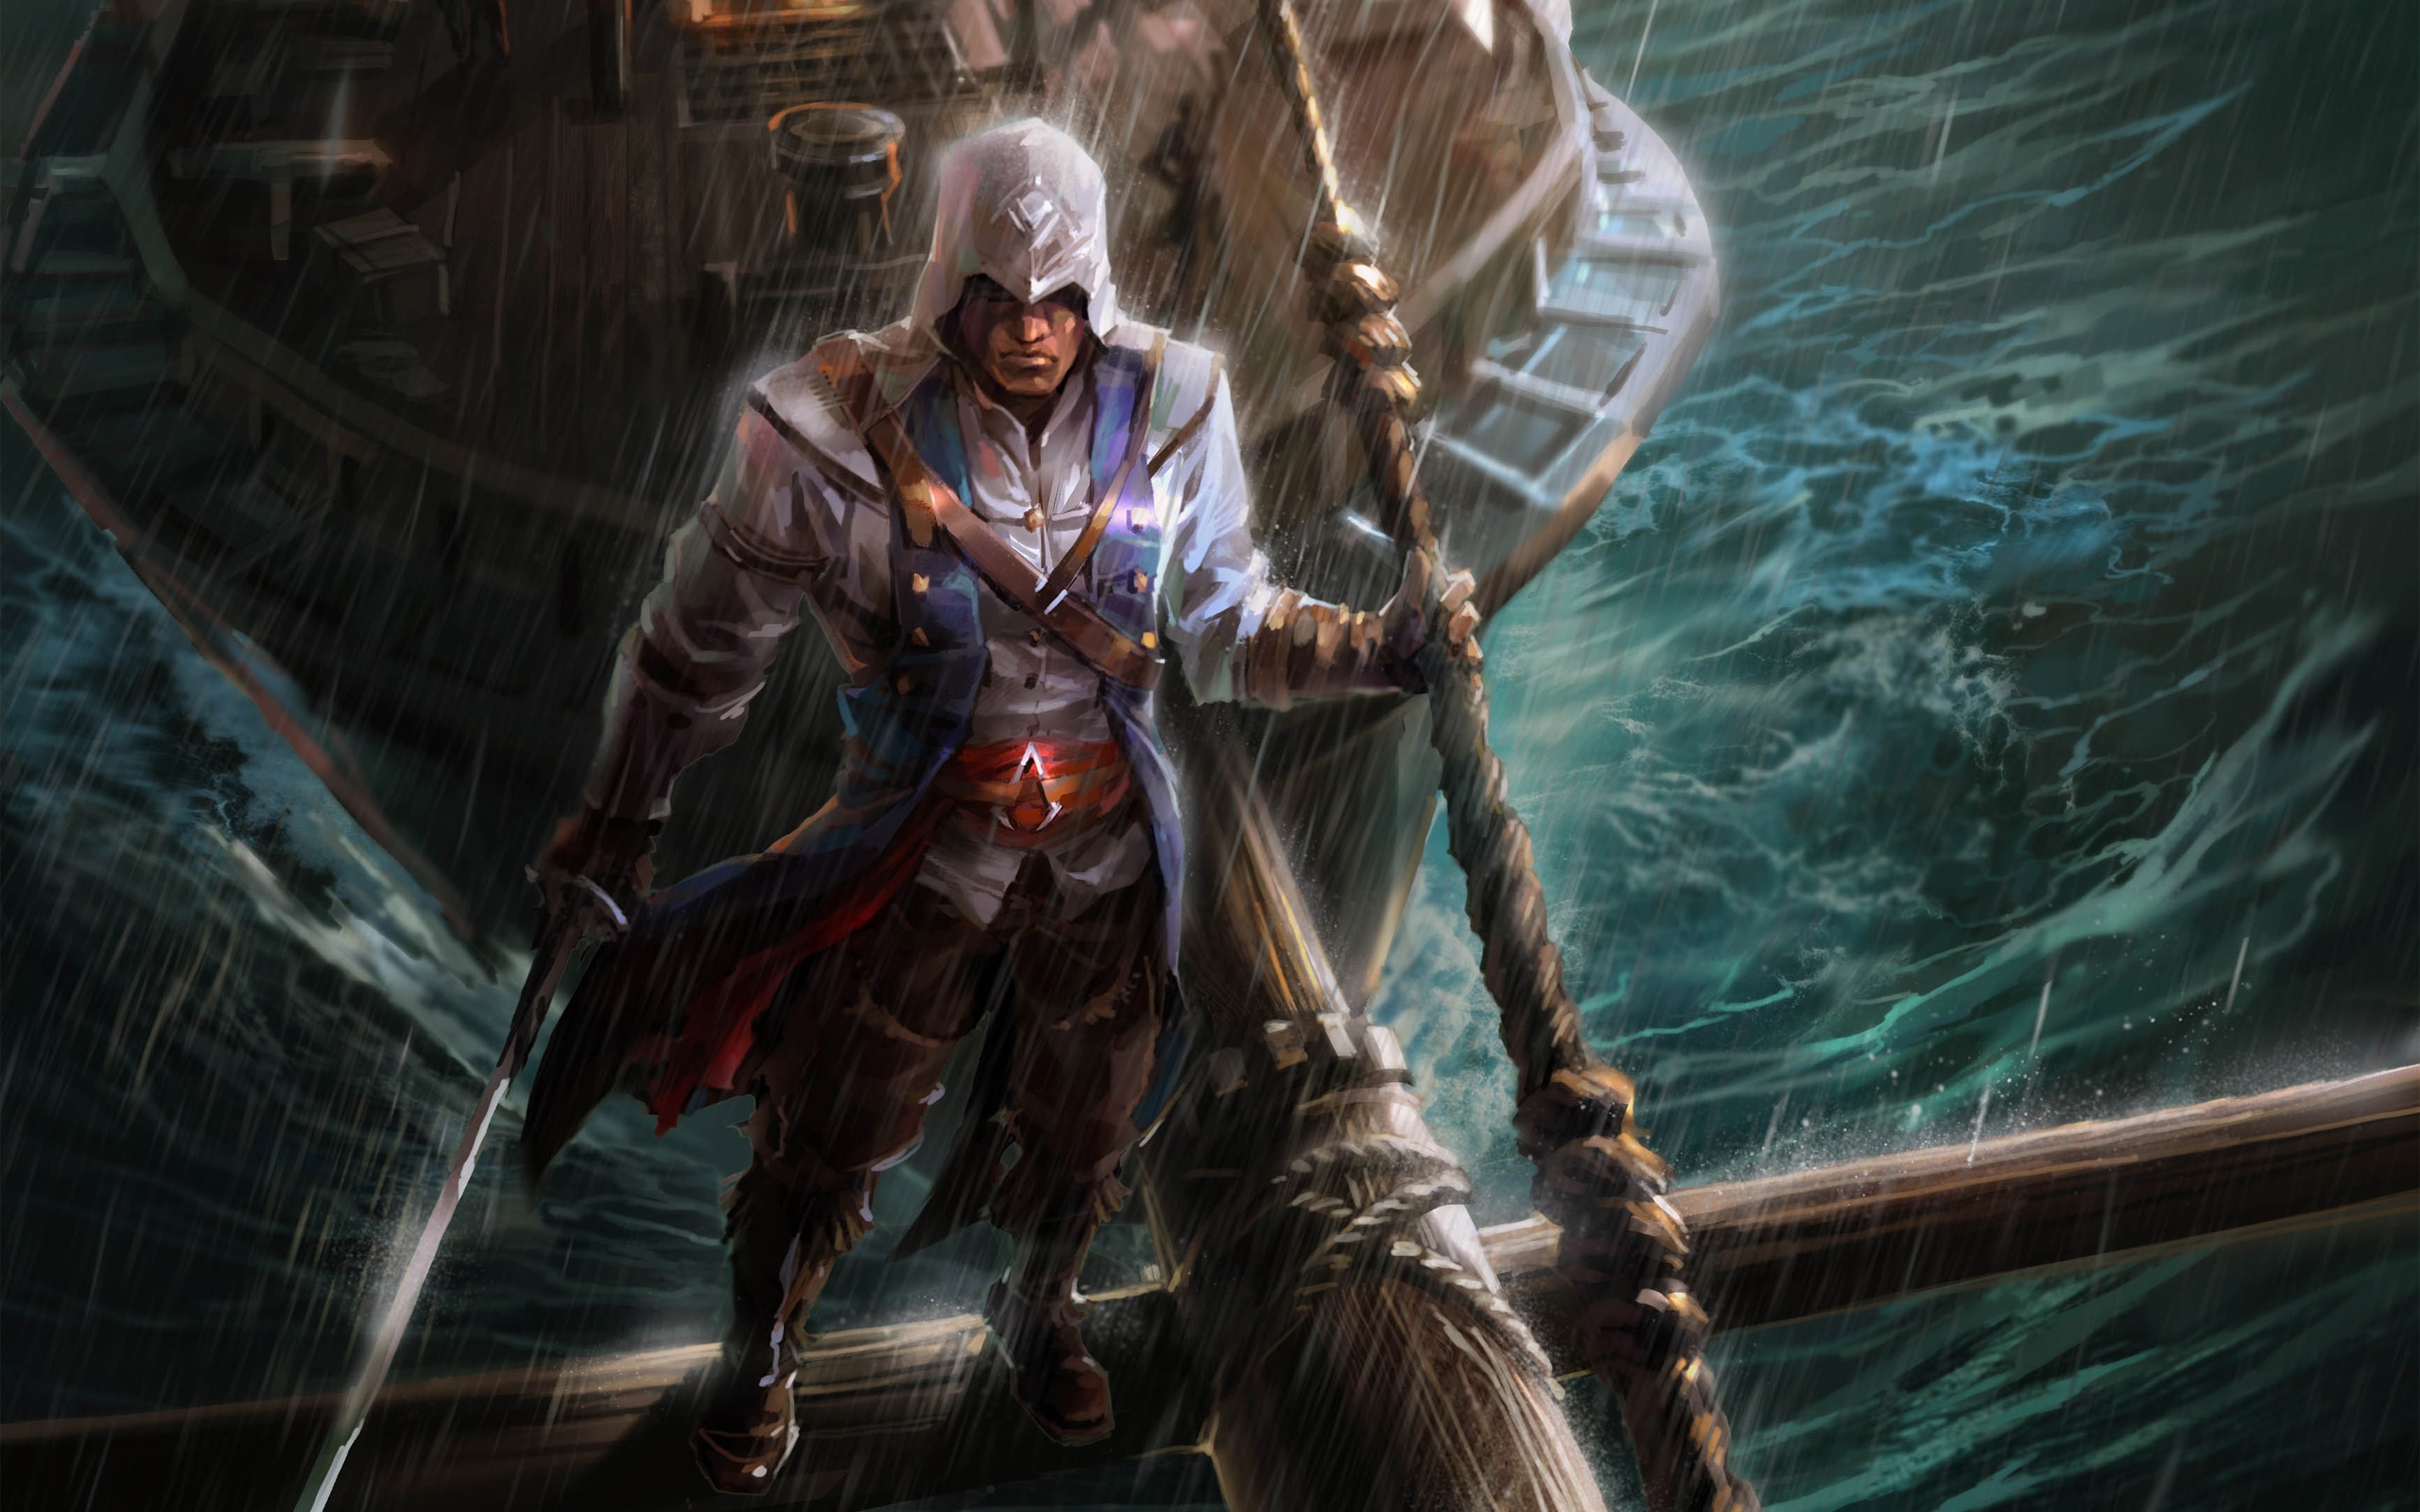 Assassins Creed Fan Art for 2560 x 1600 widescreen resolution